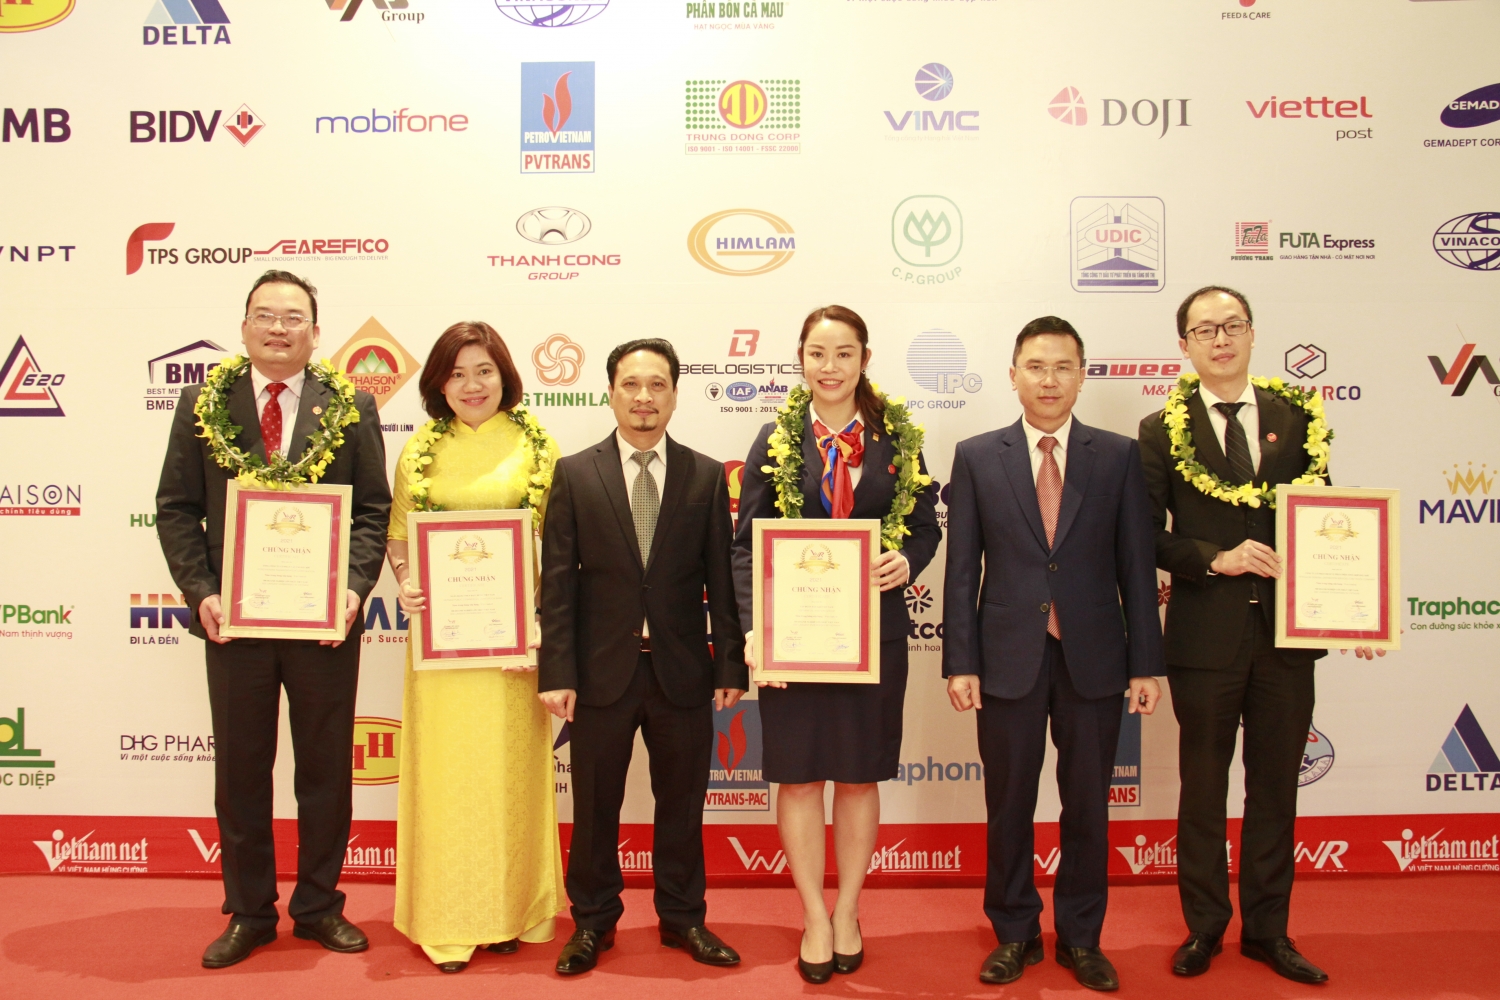 Petrovietnam cùng nhiều doanh nghiệp Dầu khí khẳng định vị thế trong Top 500 doanh nghiệp lớn nhất Việt Nam